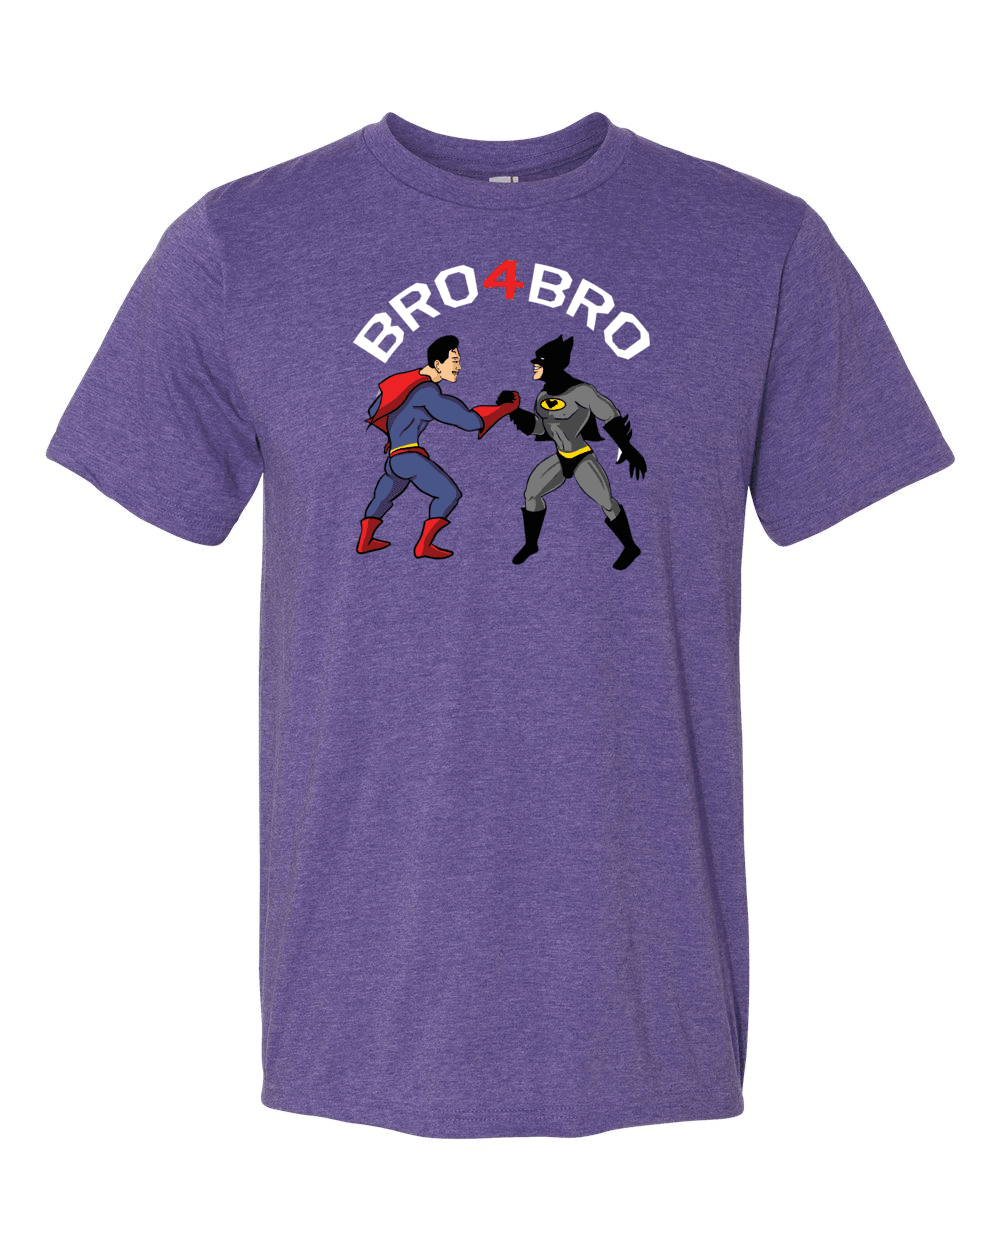 BRO4BRO-T-Shirts-Swish Embassy